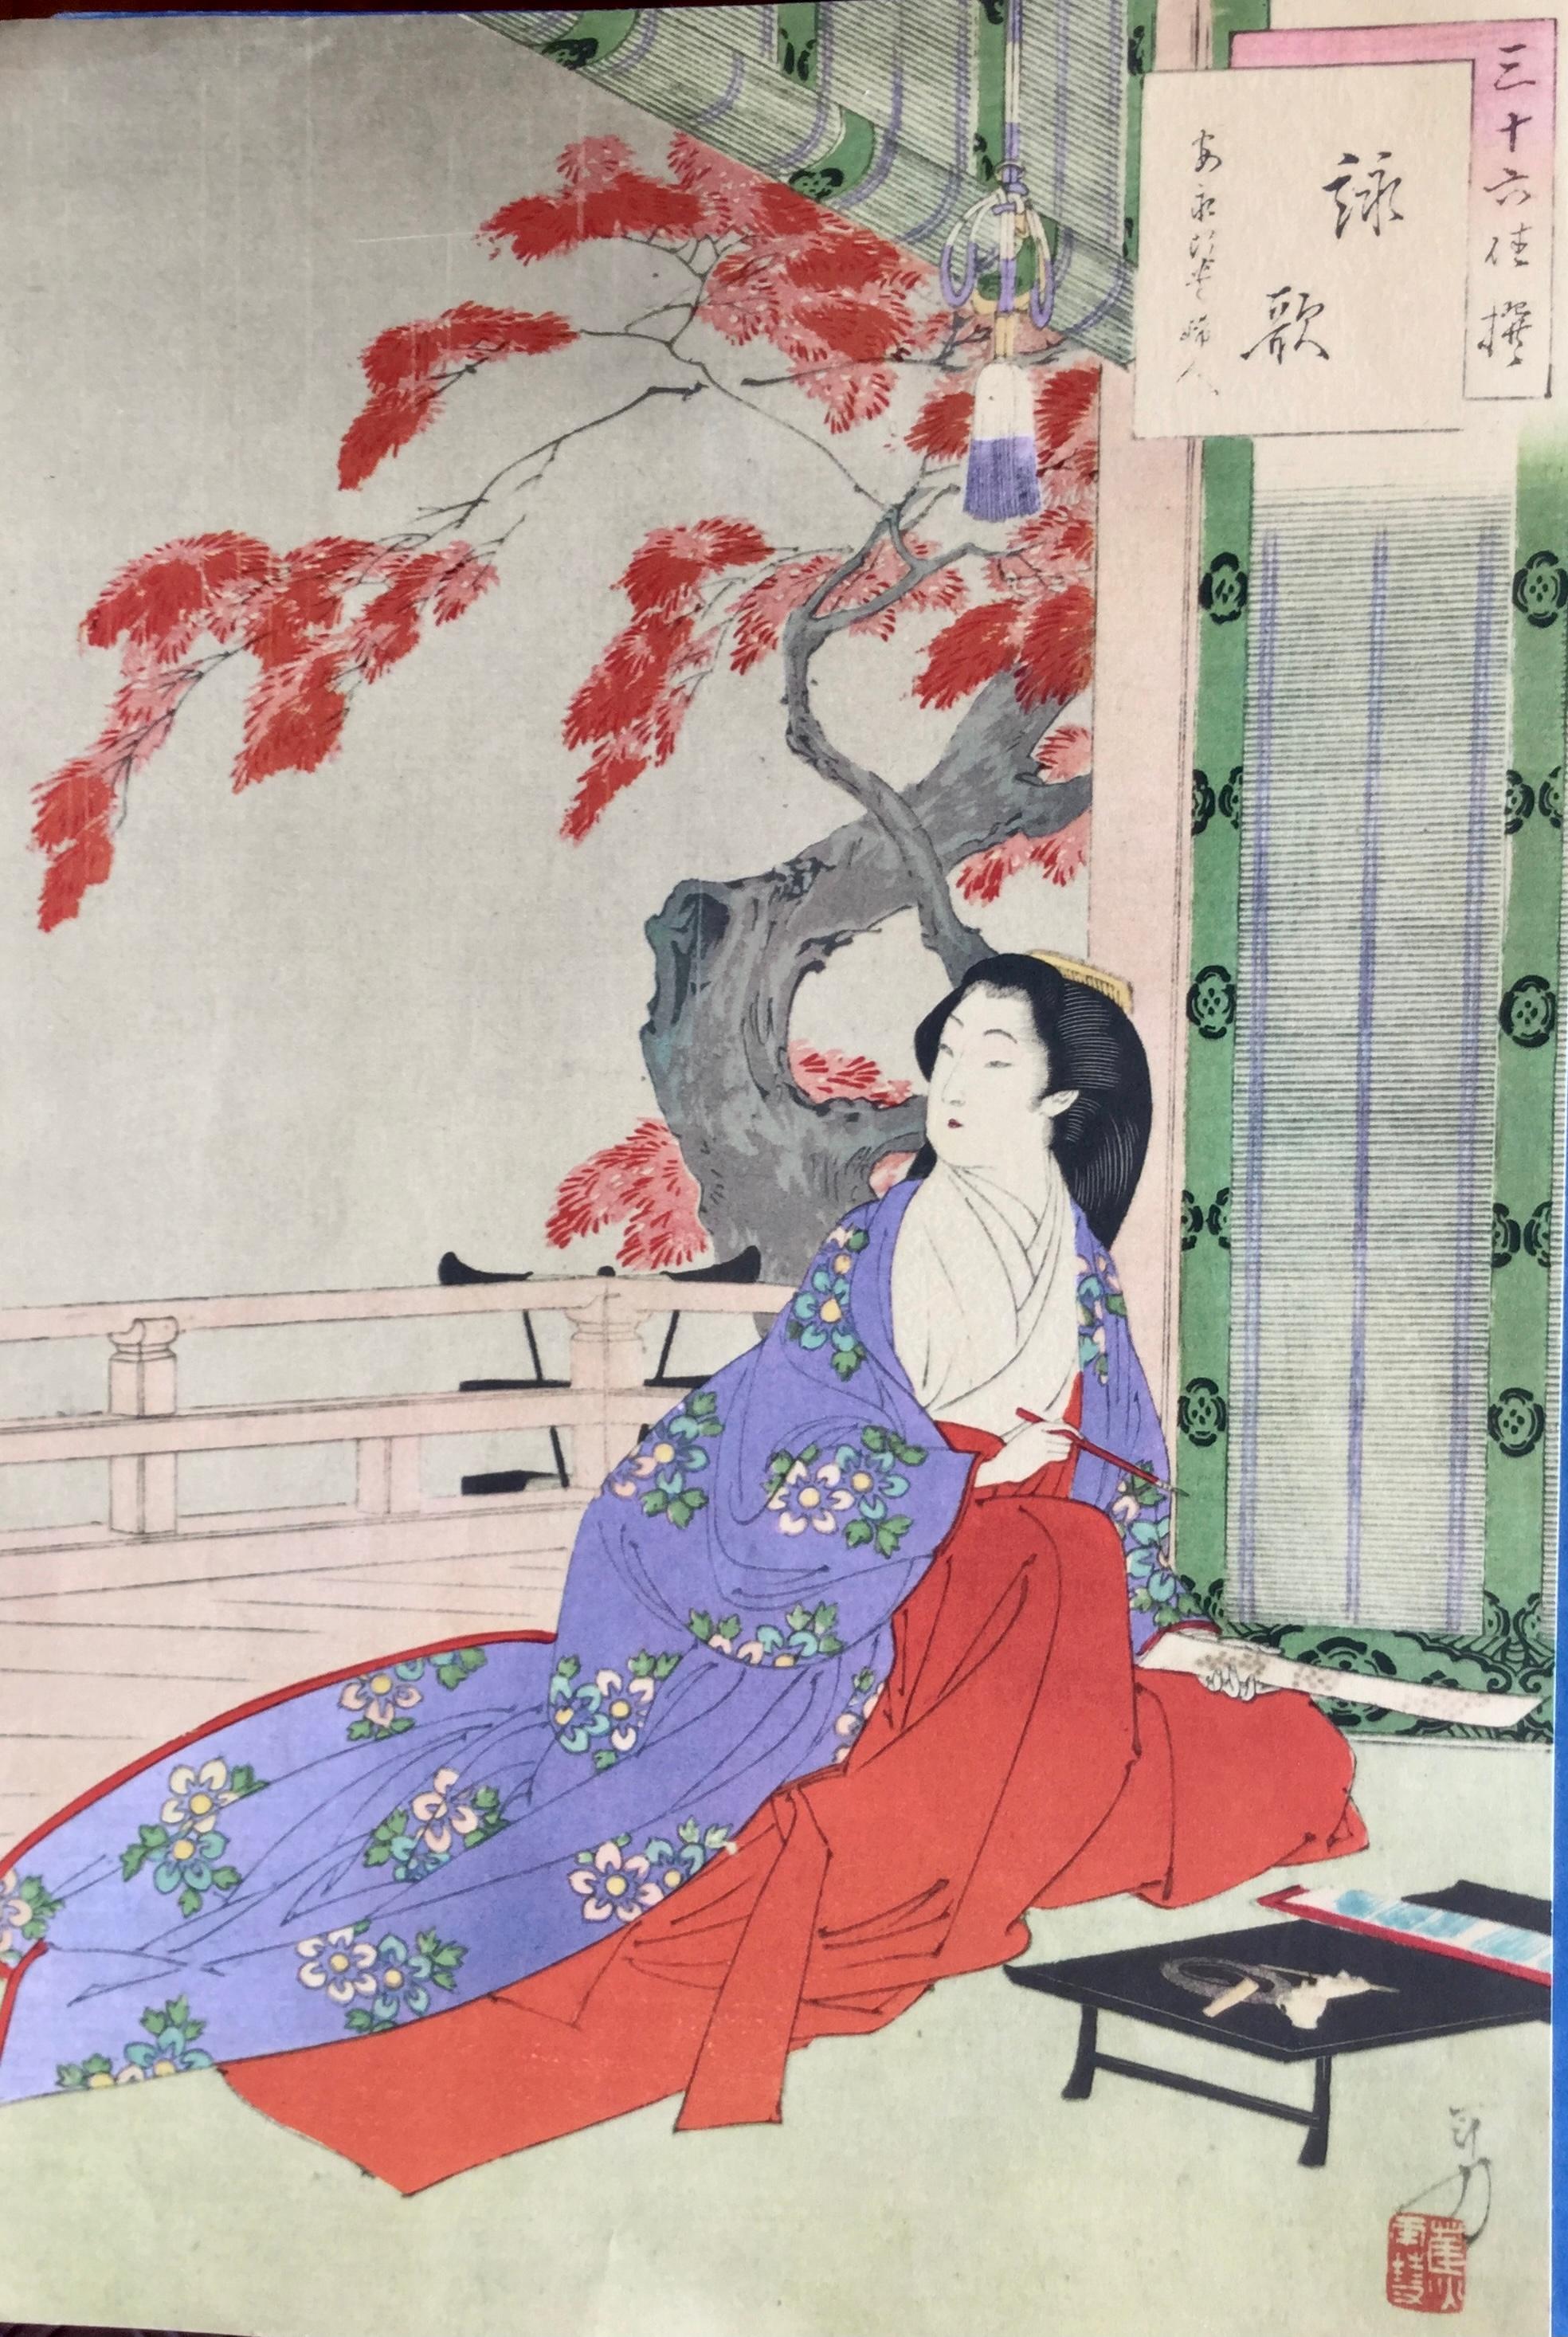 Importante série de huit gravures orientales colorées représentant des scènes emblématiques de la vie japonaise.
Elles sont l'œuvre de grands artistes parmi lesquels :
Mizuno Toshikata (1866-1908) 
Utagawa Toyokuni (japonais : ? ; 1769 à Edo - 24